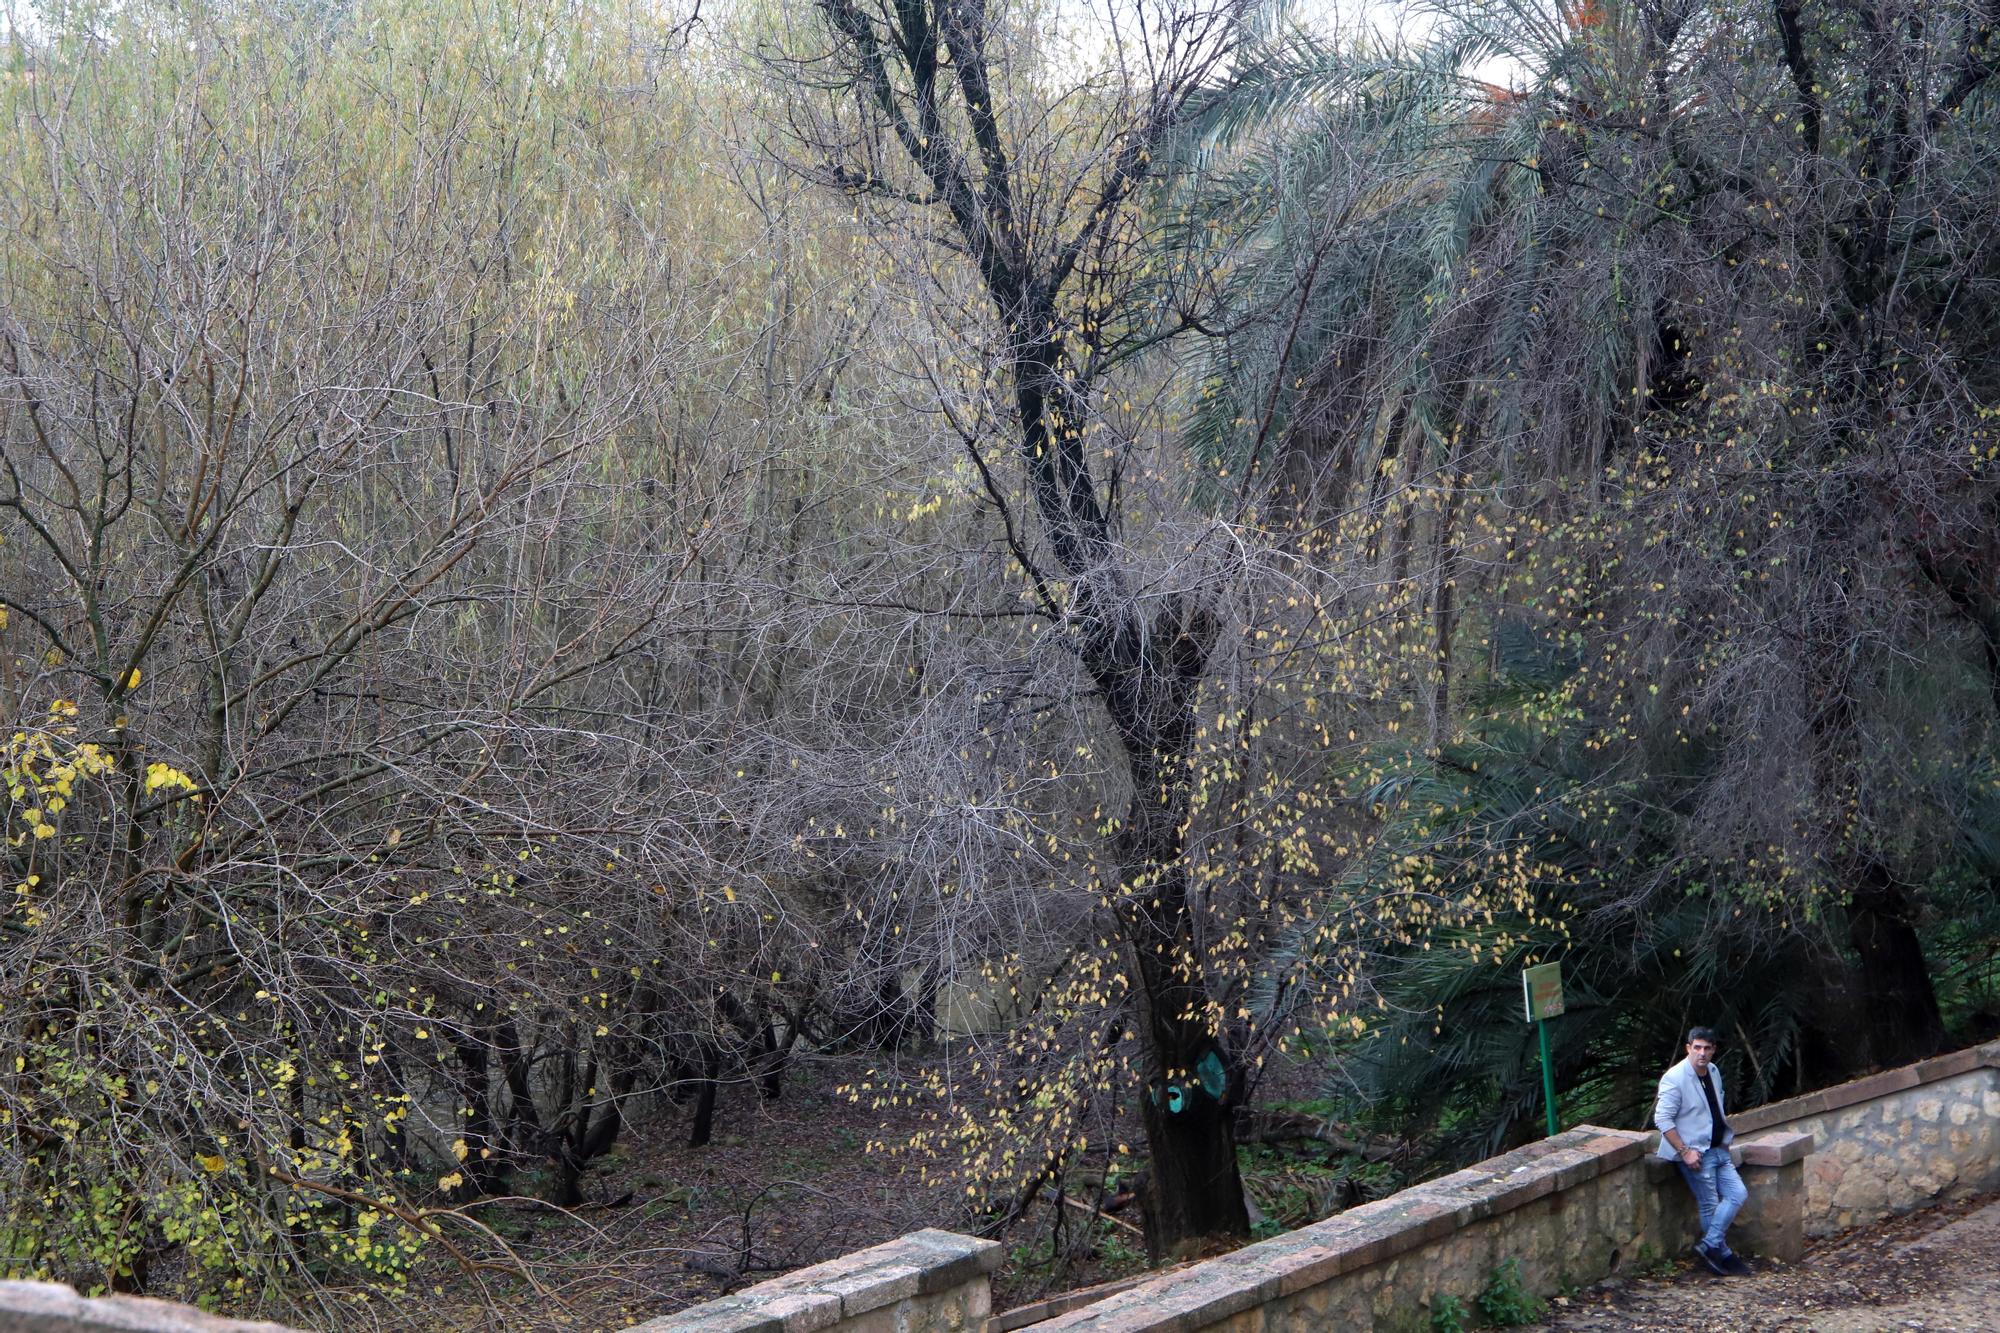 La vegetación no deja ver el río Guadalquivir